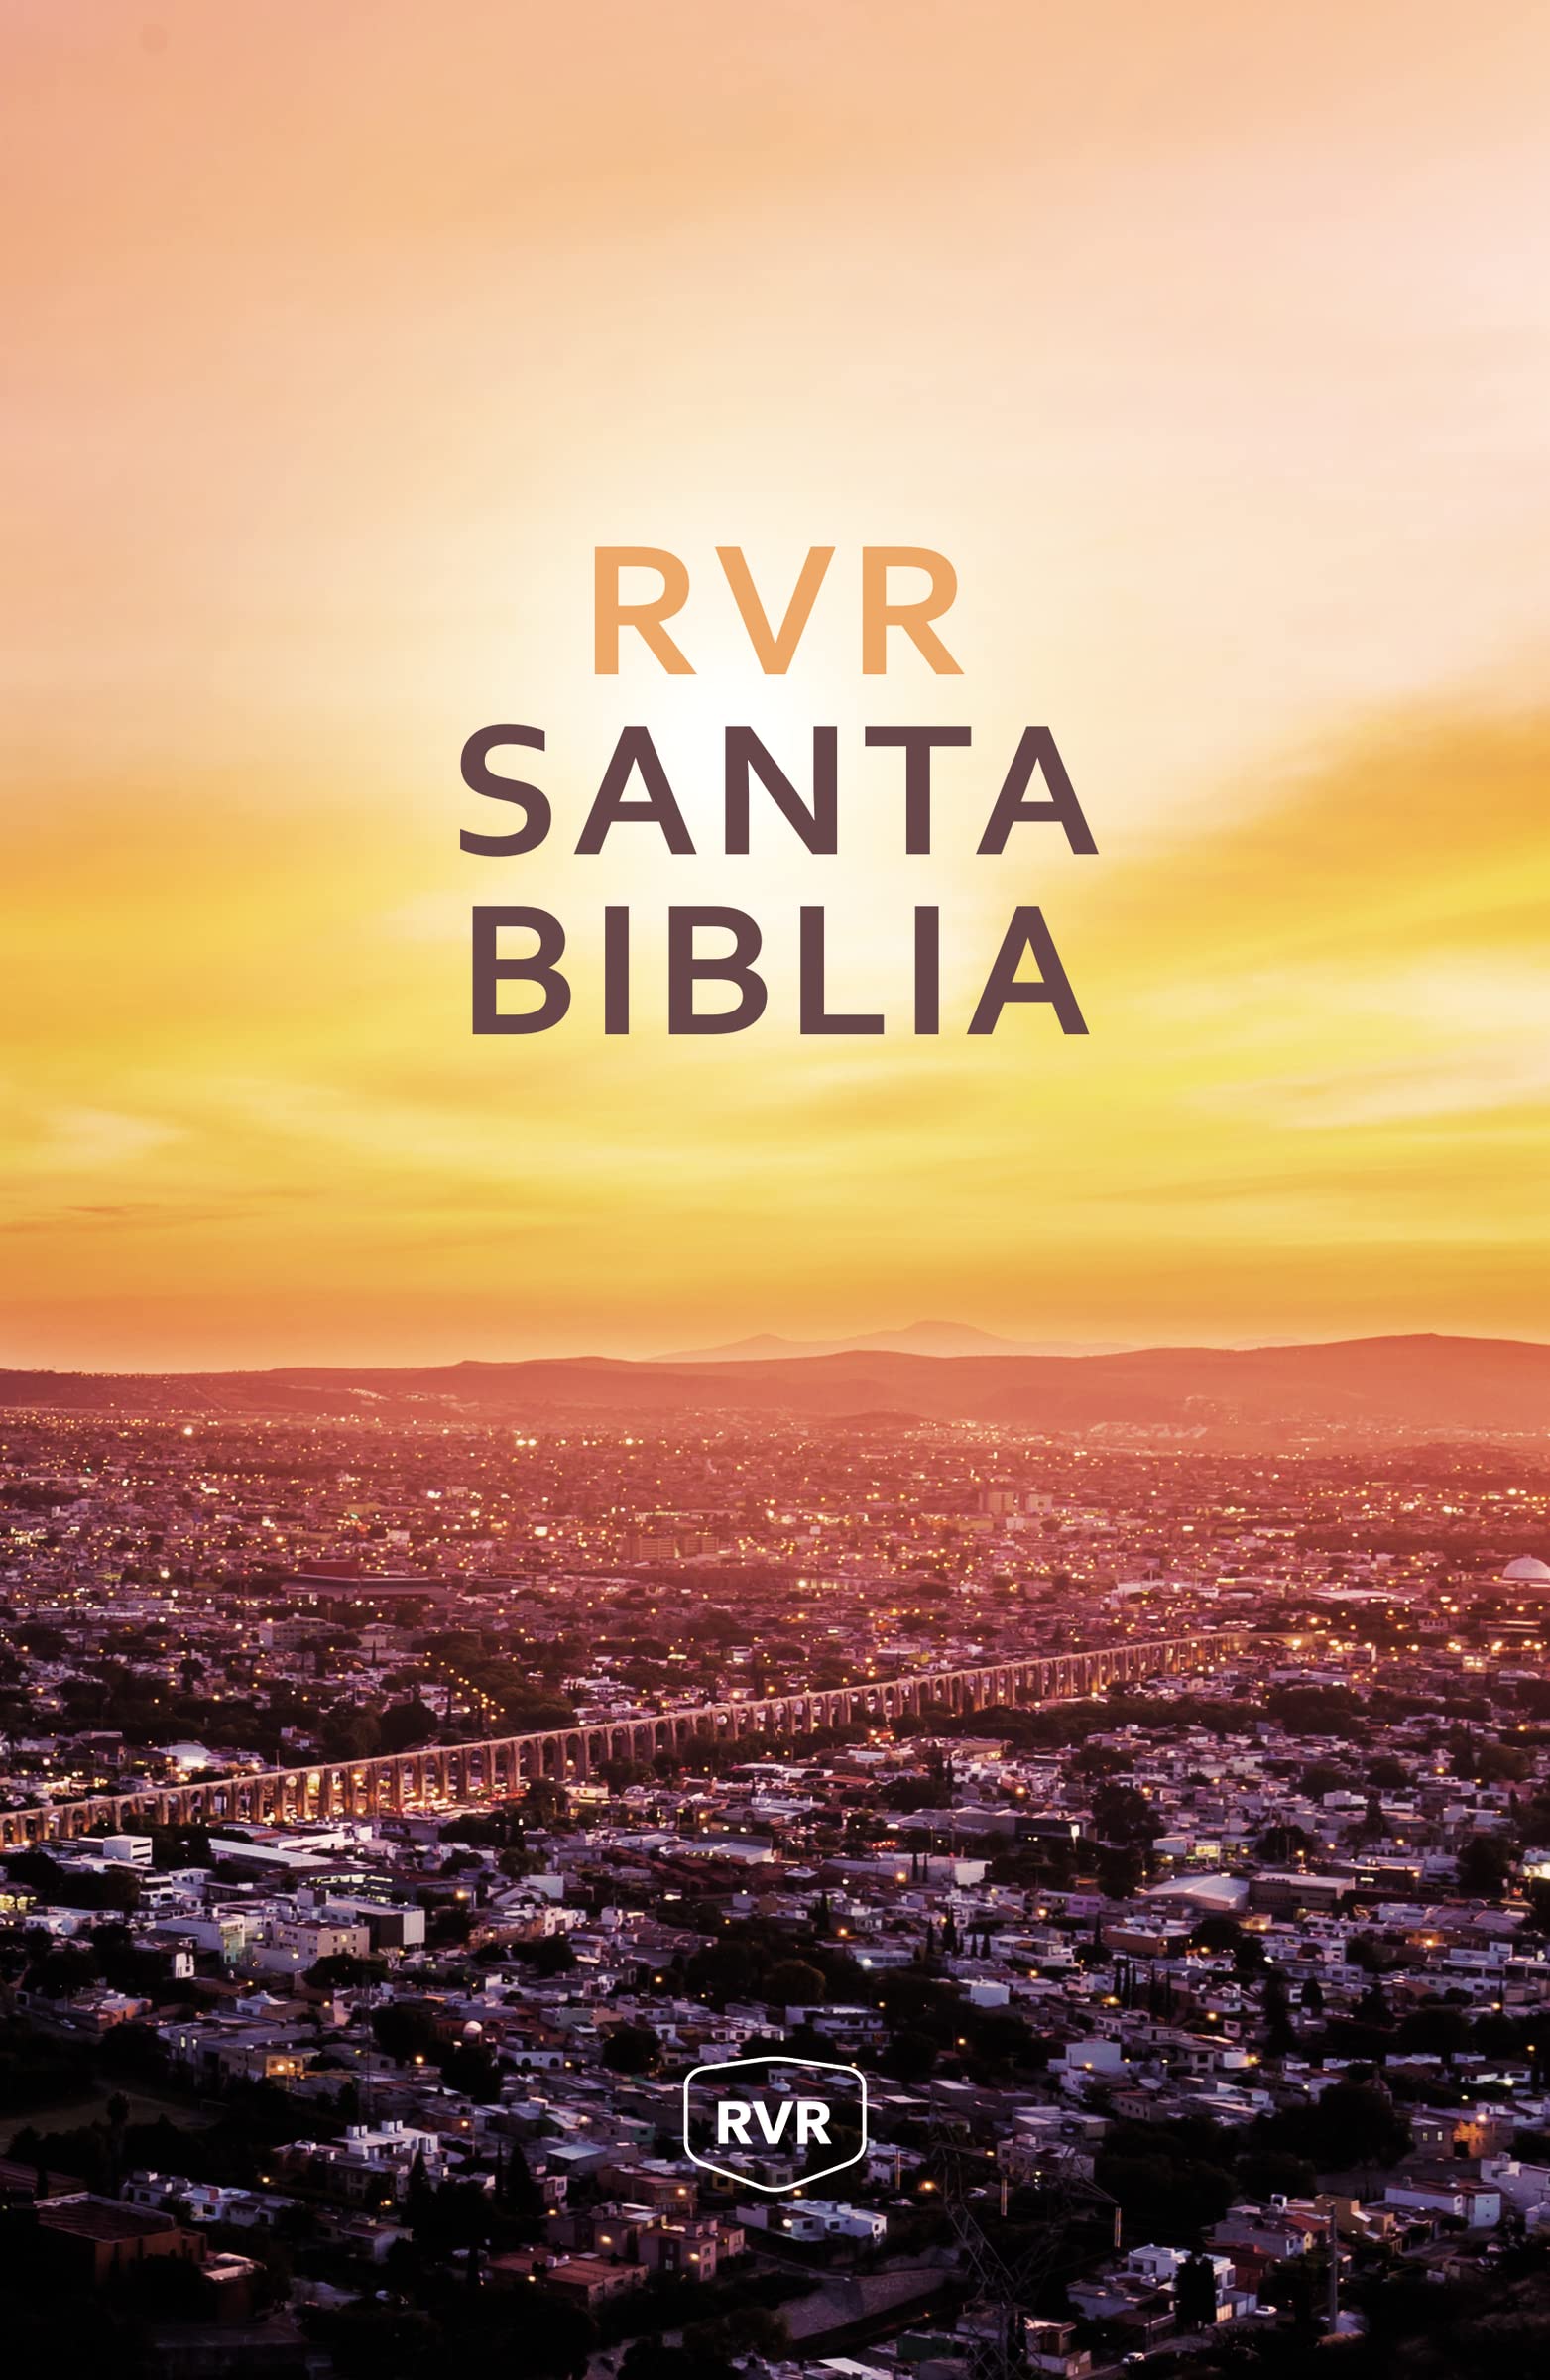 Santa Biblia RVR, Edición Misionera, Tapa Rústica (Spanish Edition)